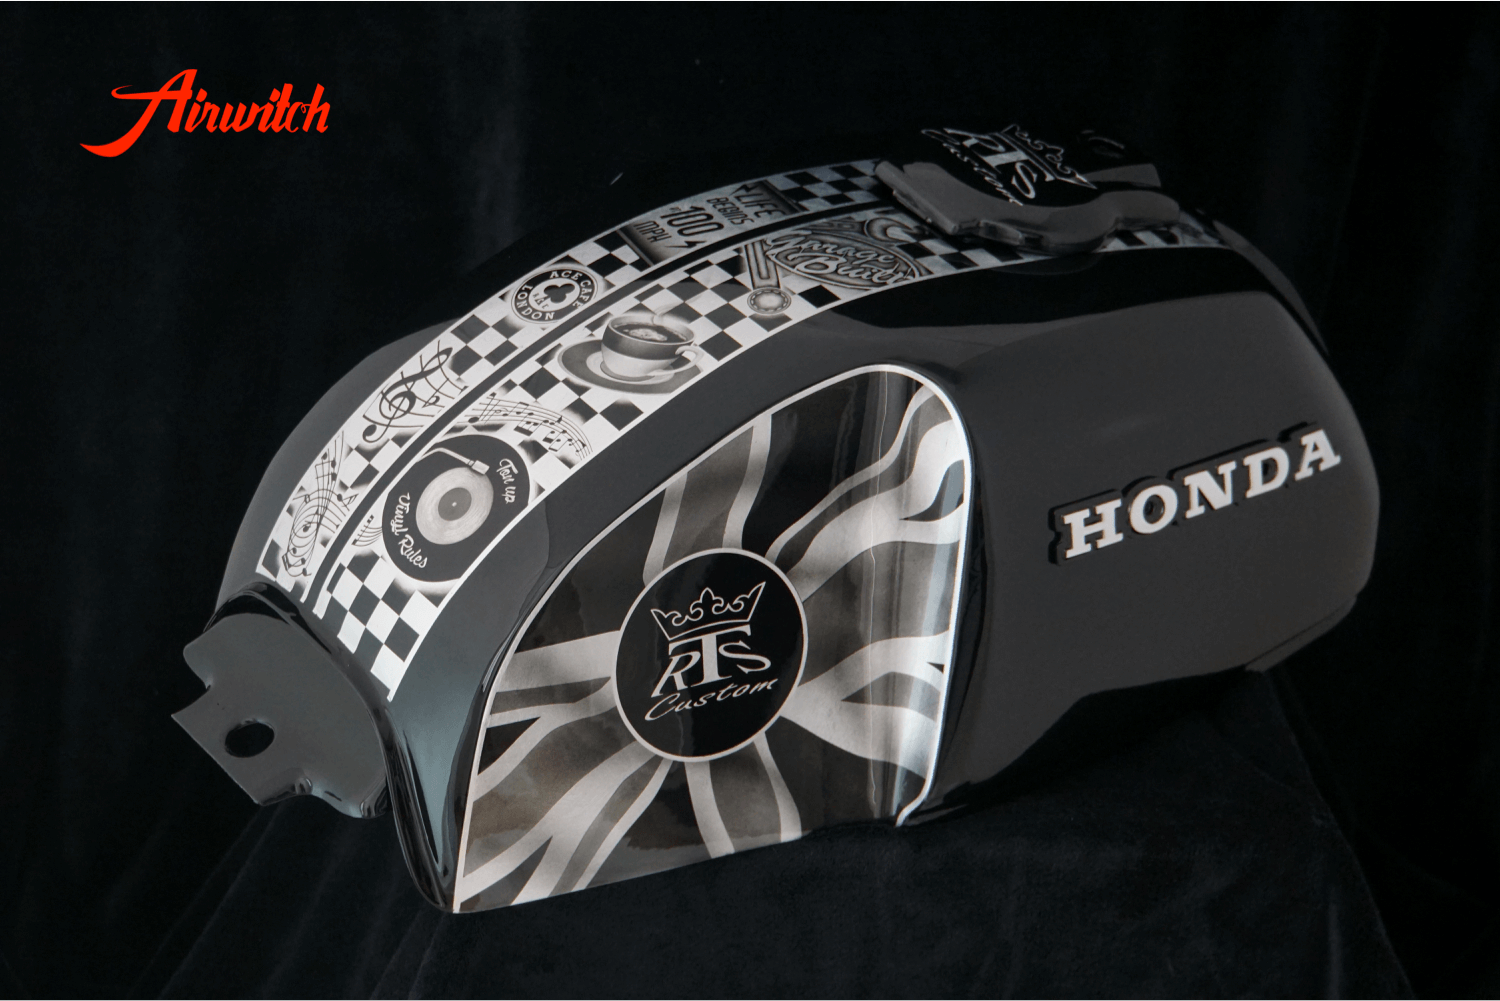 Custom Lackierung Cafe Racer Honda CX 500 mit Airbrush in schwarz auf Blattsilber von Airwitch